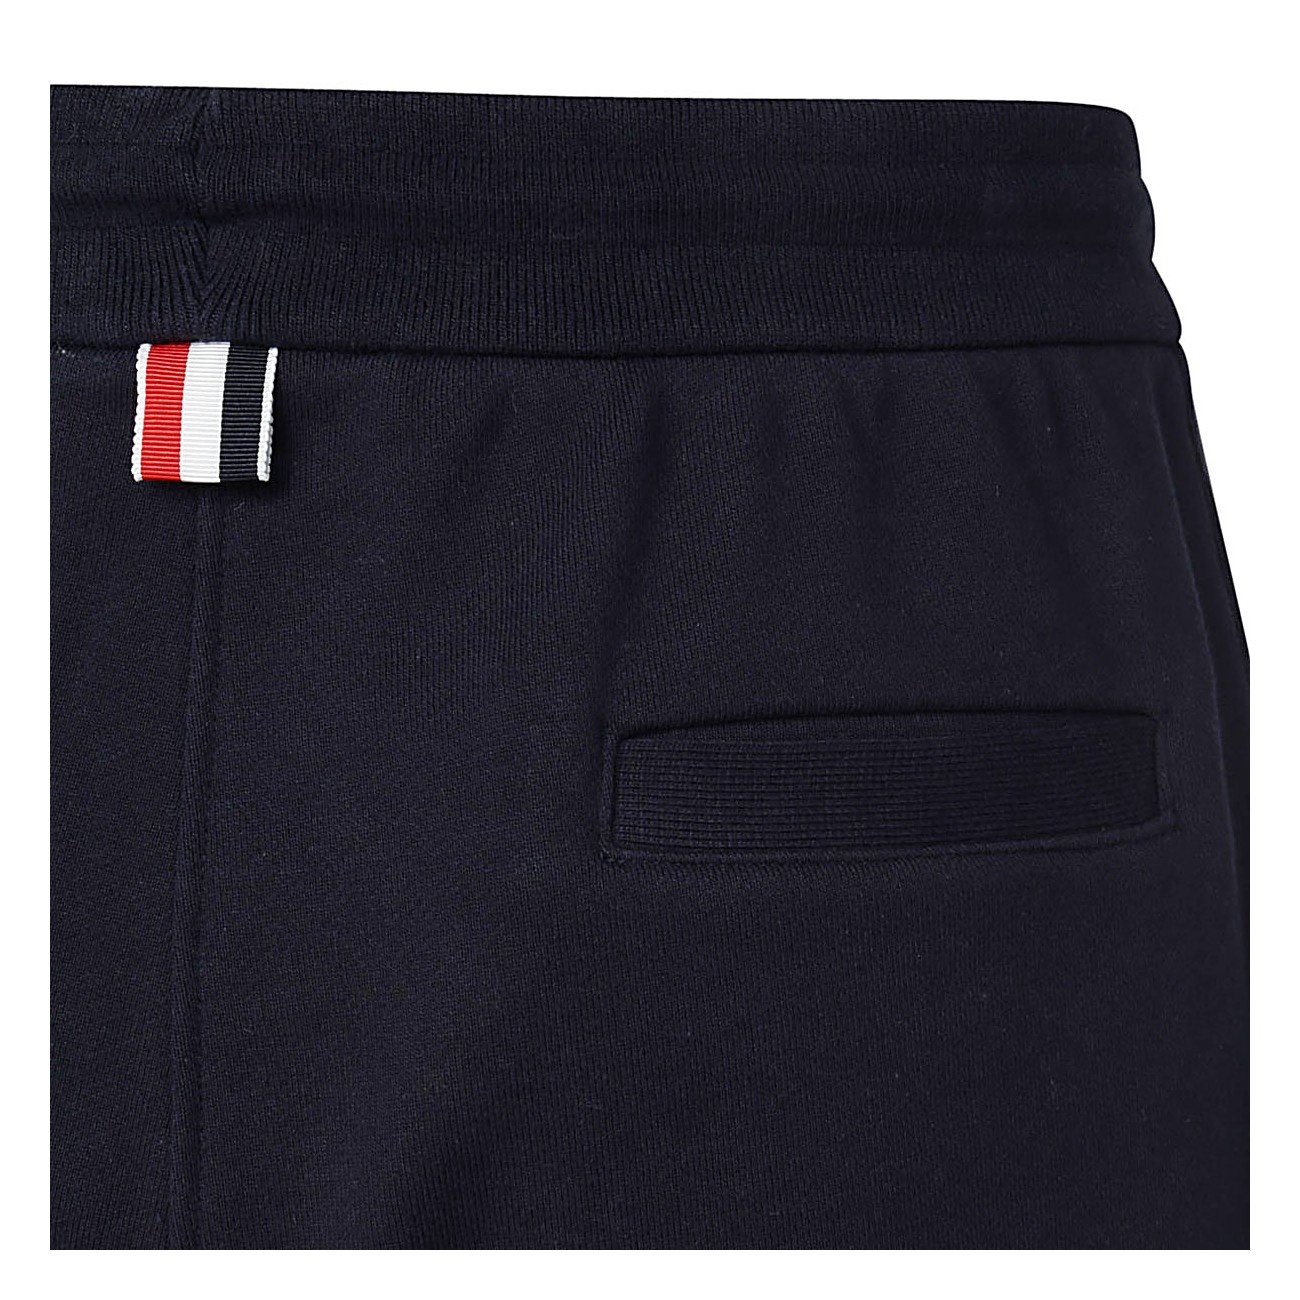 navy blue cotton pants - 3